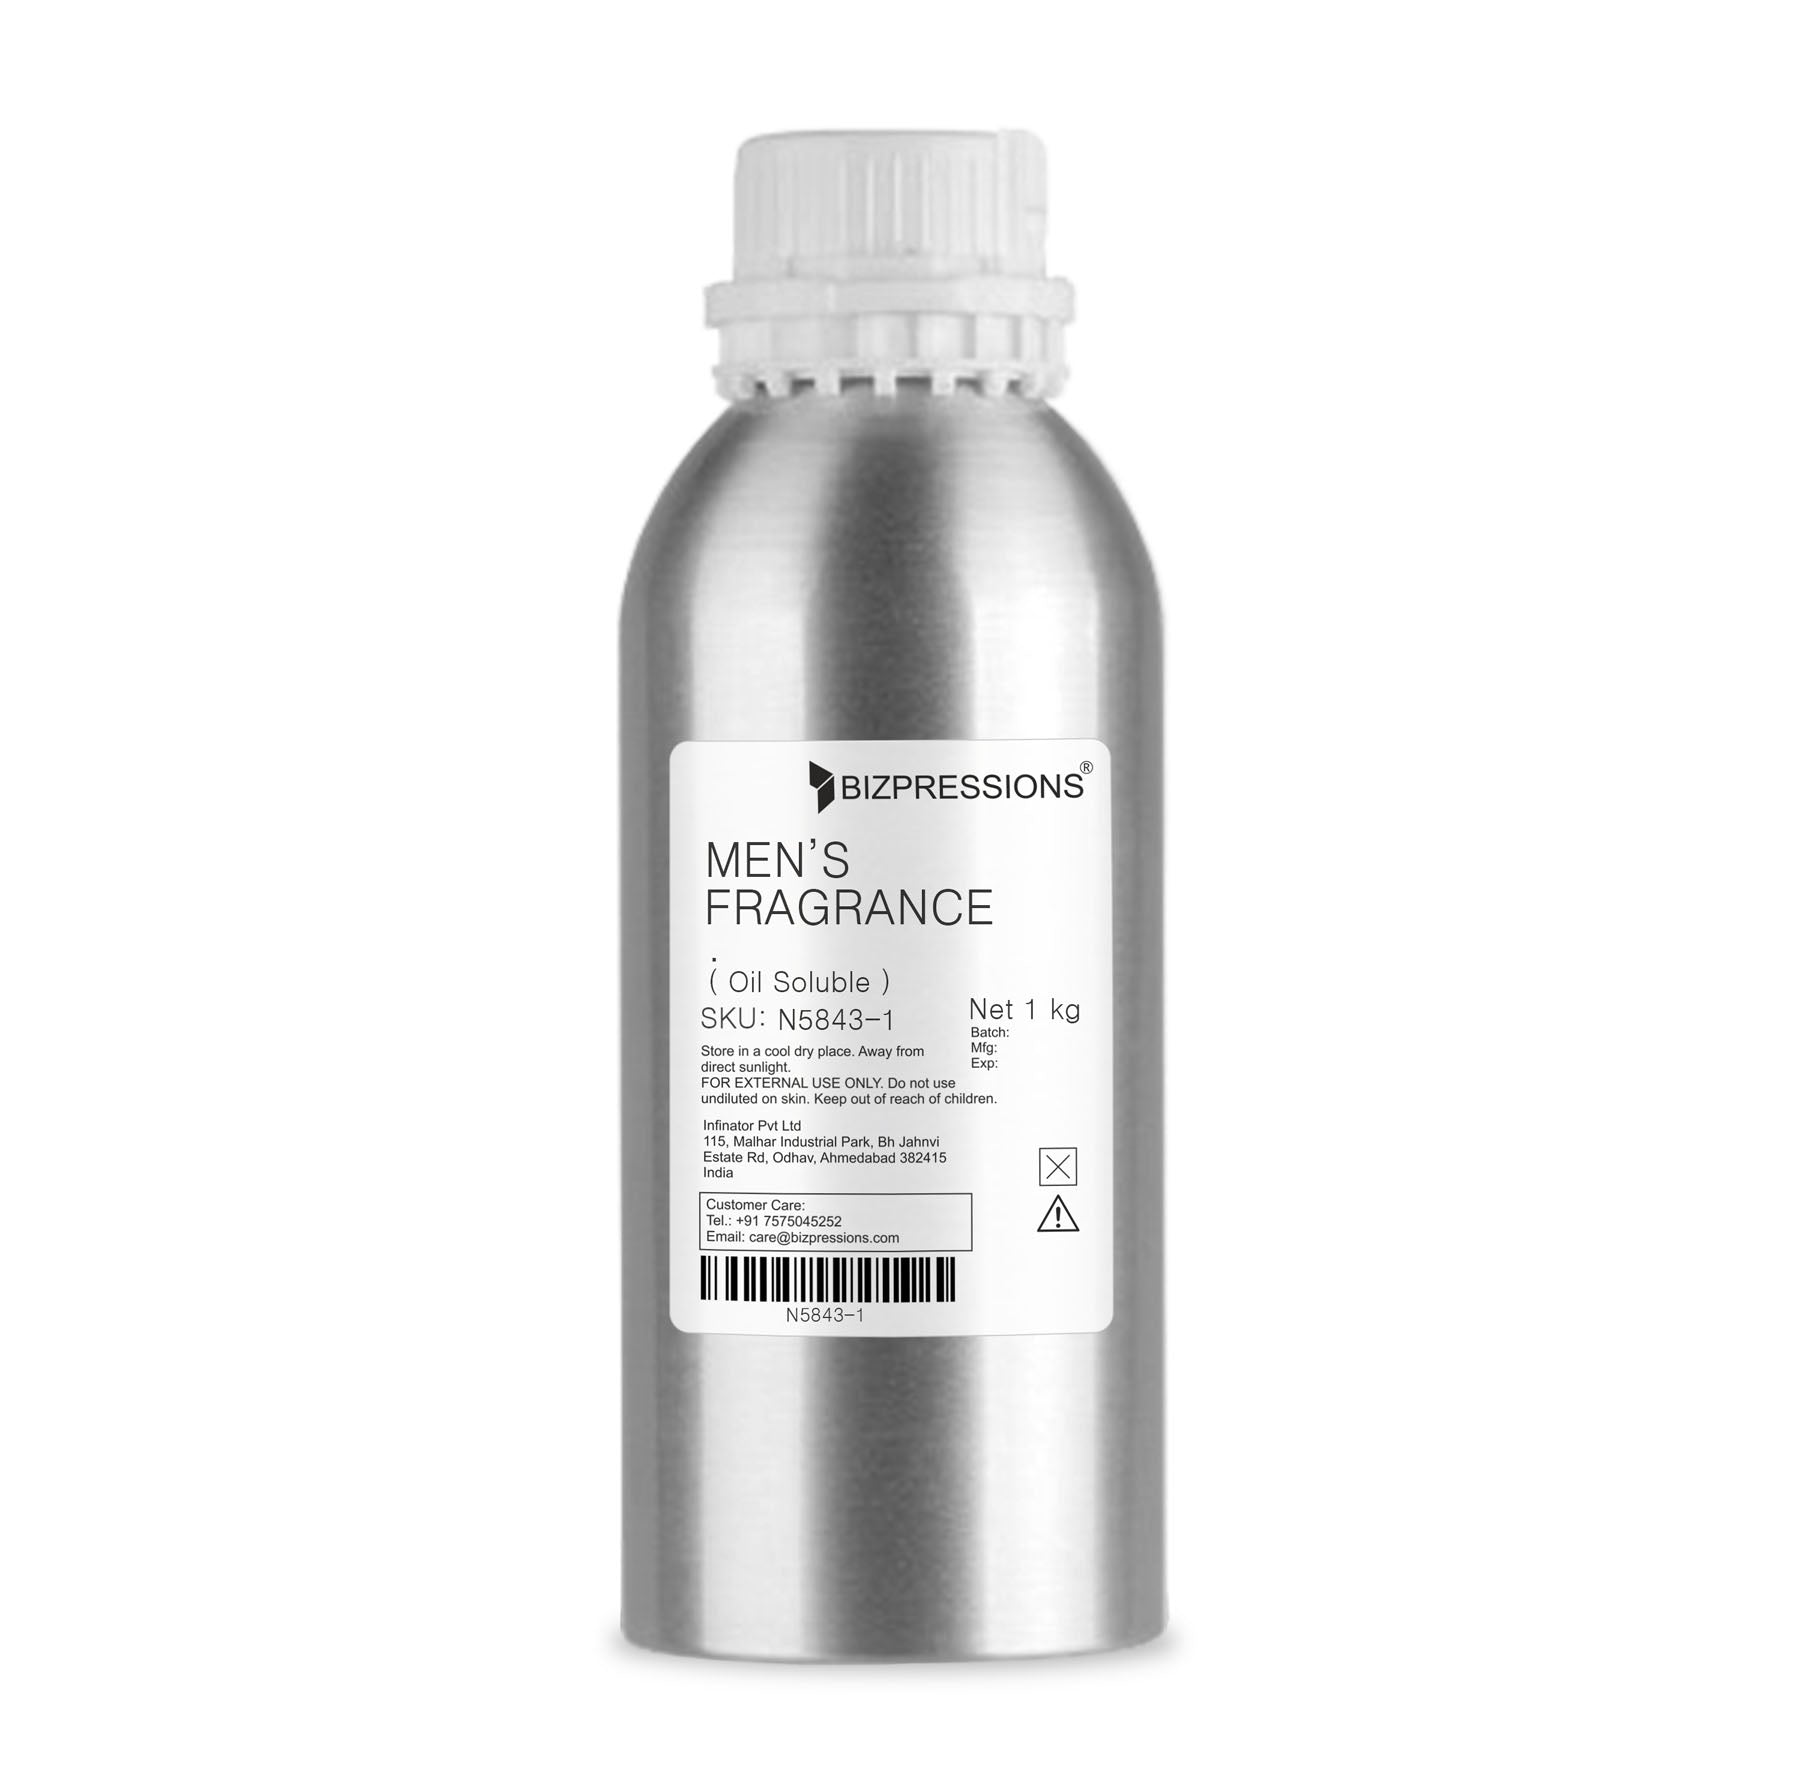 MEN'S FRAGRANCE - Fragrance ( Oil Soluble ) - 1 kg